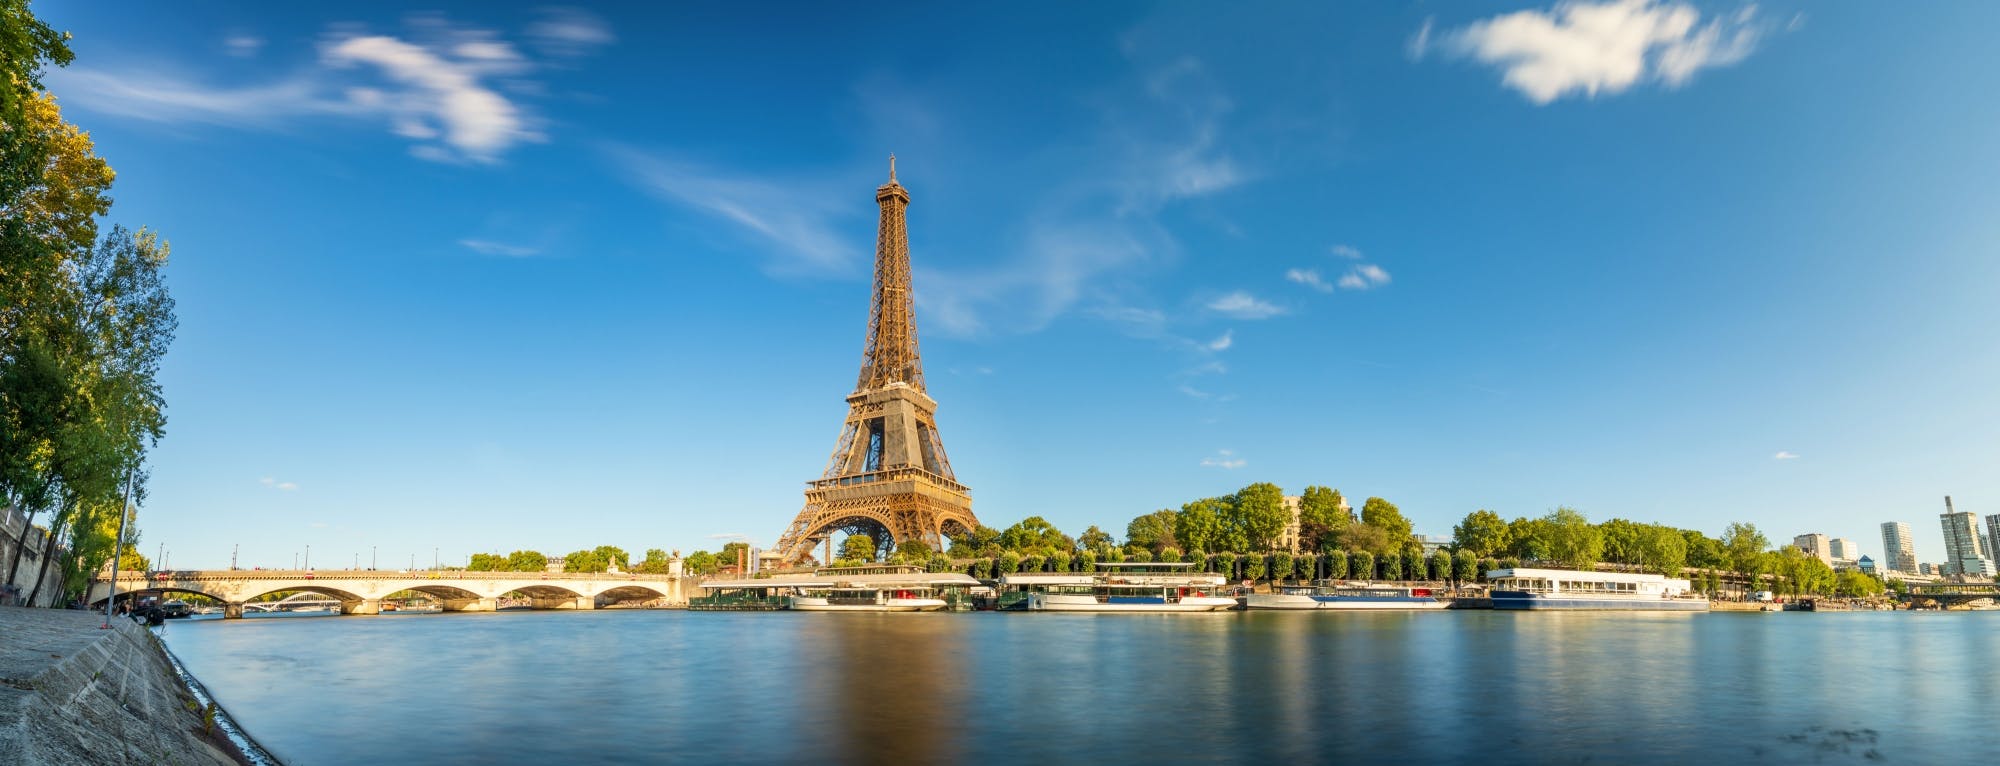 Pariisin kierros ja Seine-joen risteily